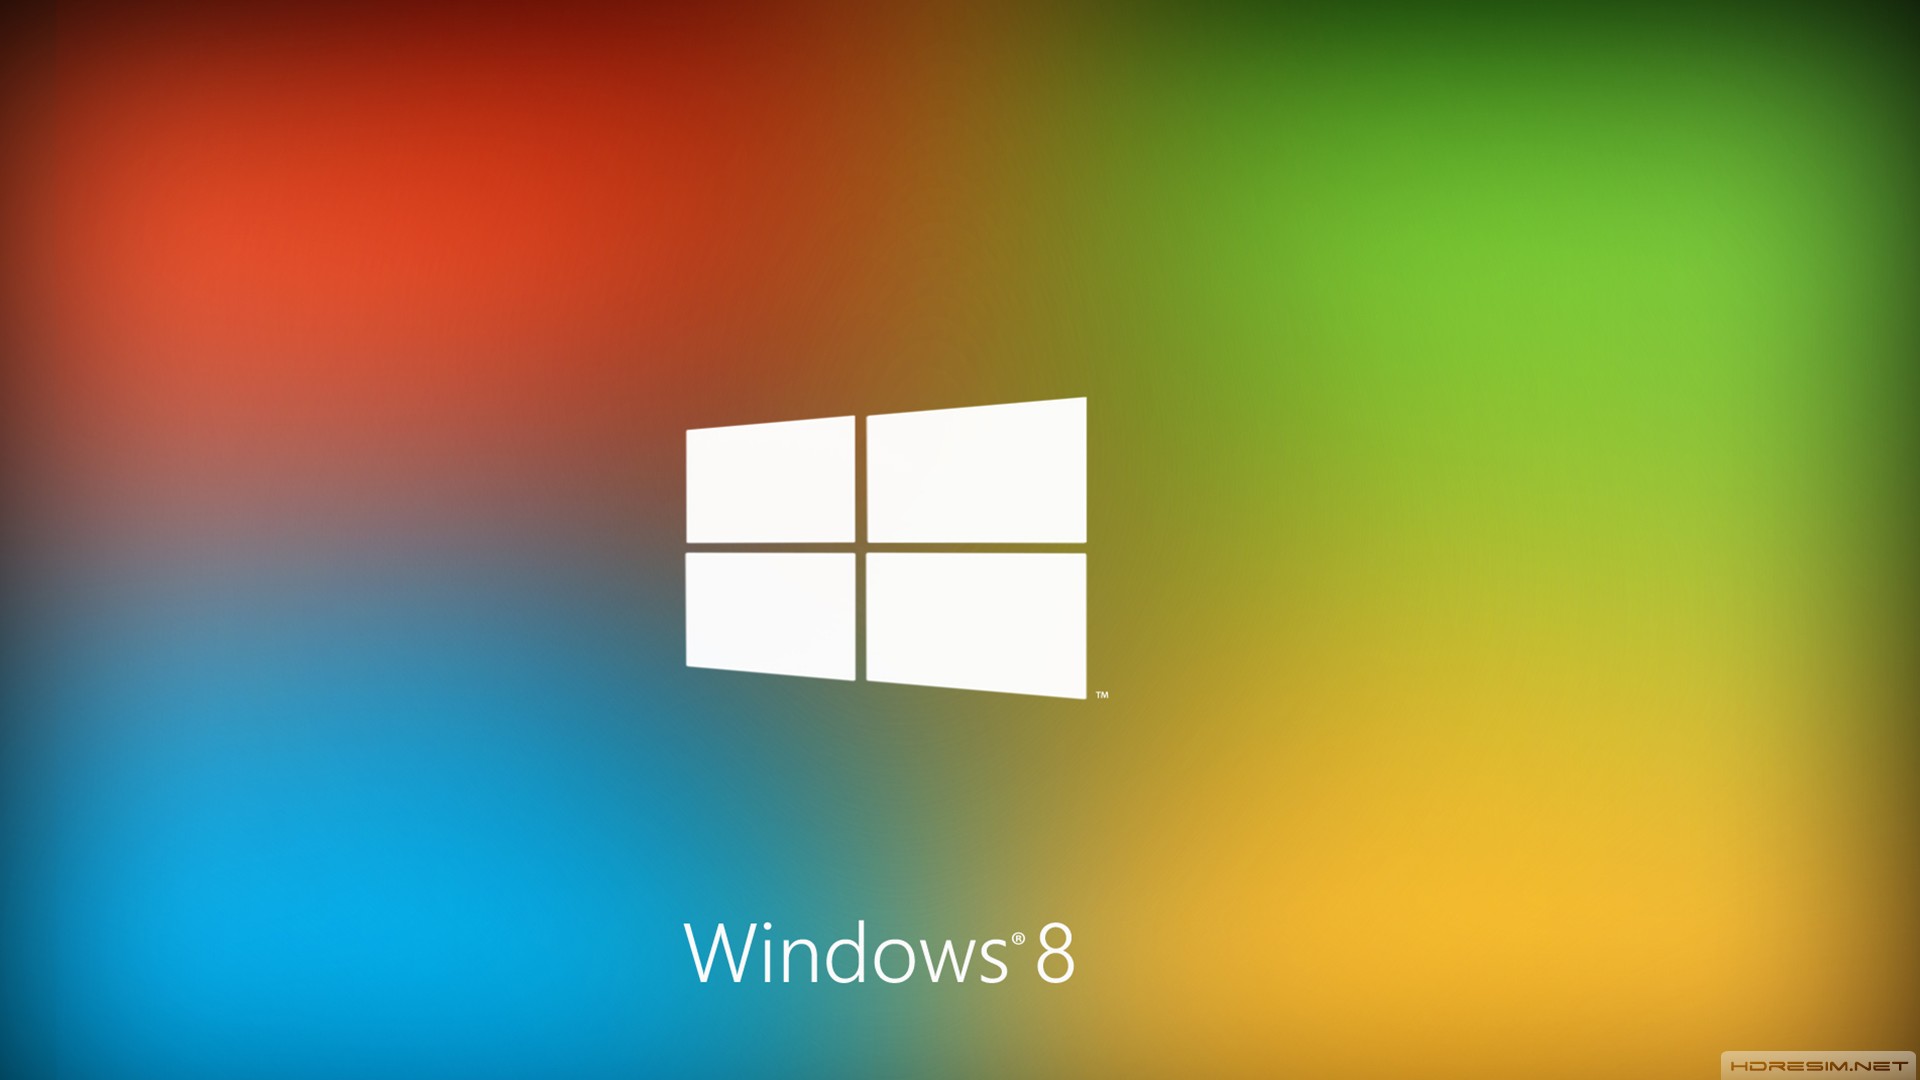 windows,işletim sistemi,logo,yazılım,windows 8